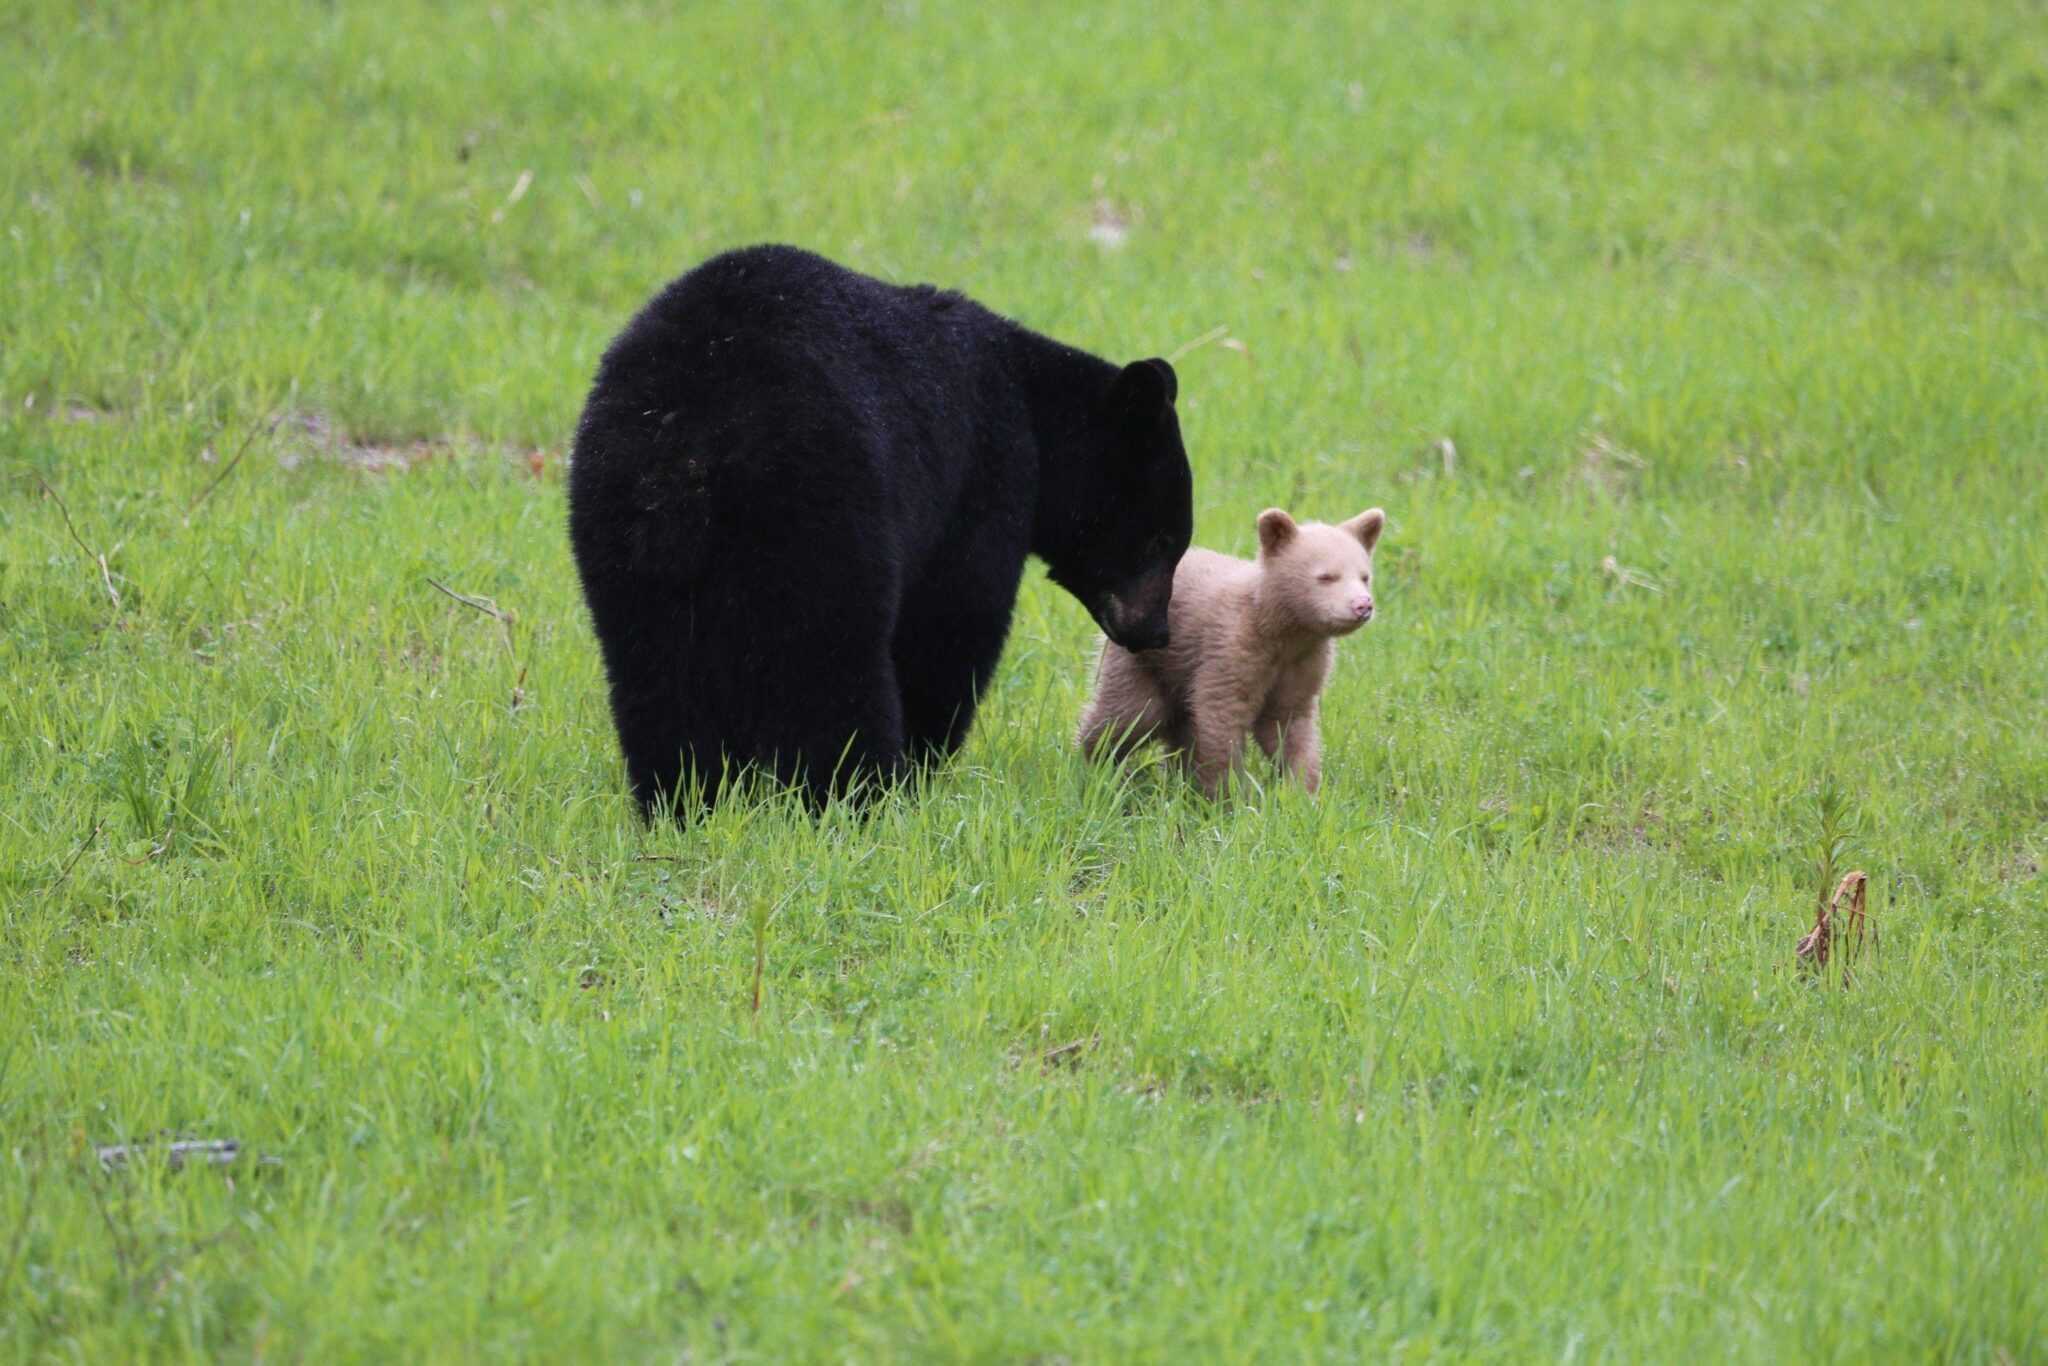 Niedźwiadek w kolorze kremowym zauważony podczas zabawy ze swoją czarną matką